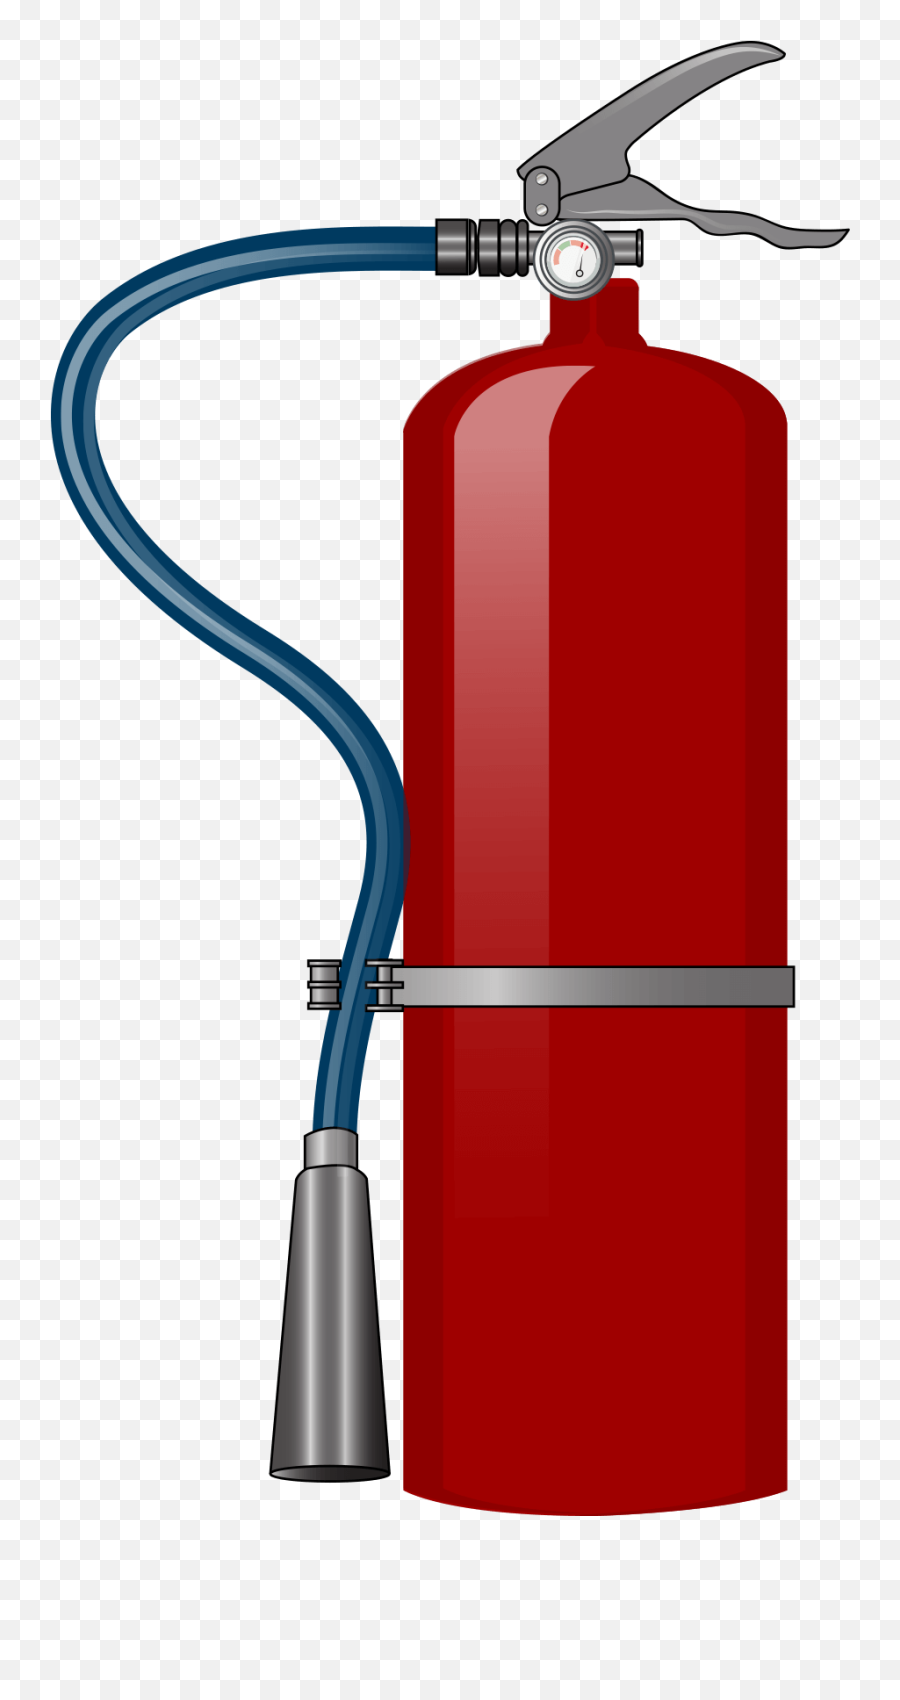 Fire Extinguisher Png Transparent Images Png All - Transparent Fire Extinguisher Clipart Emoji,Fire Transparent Background